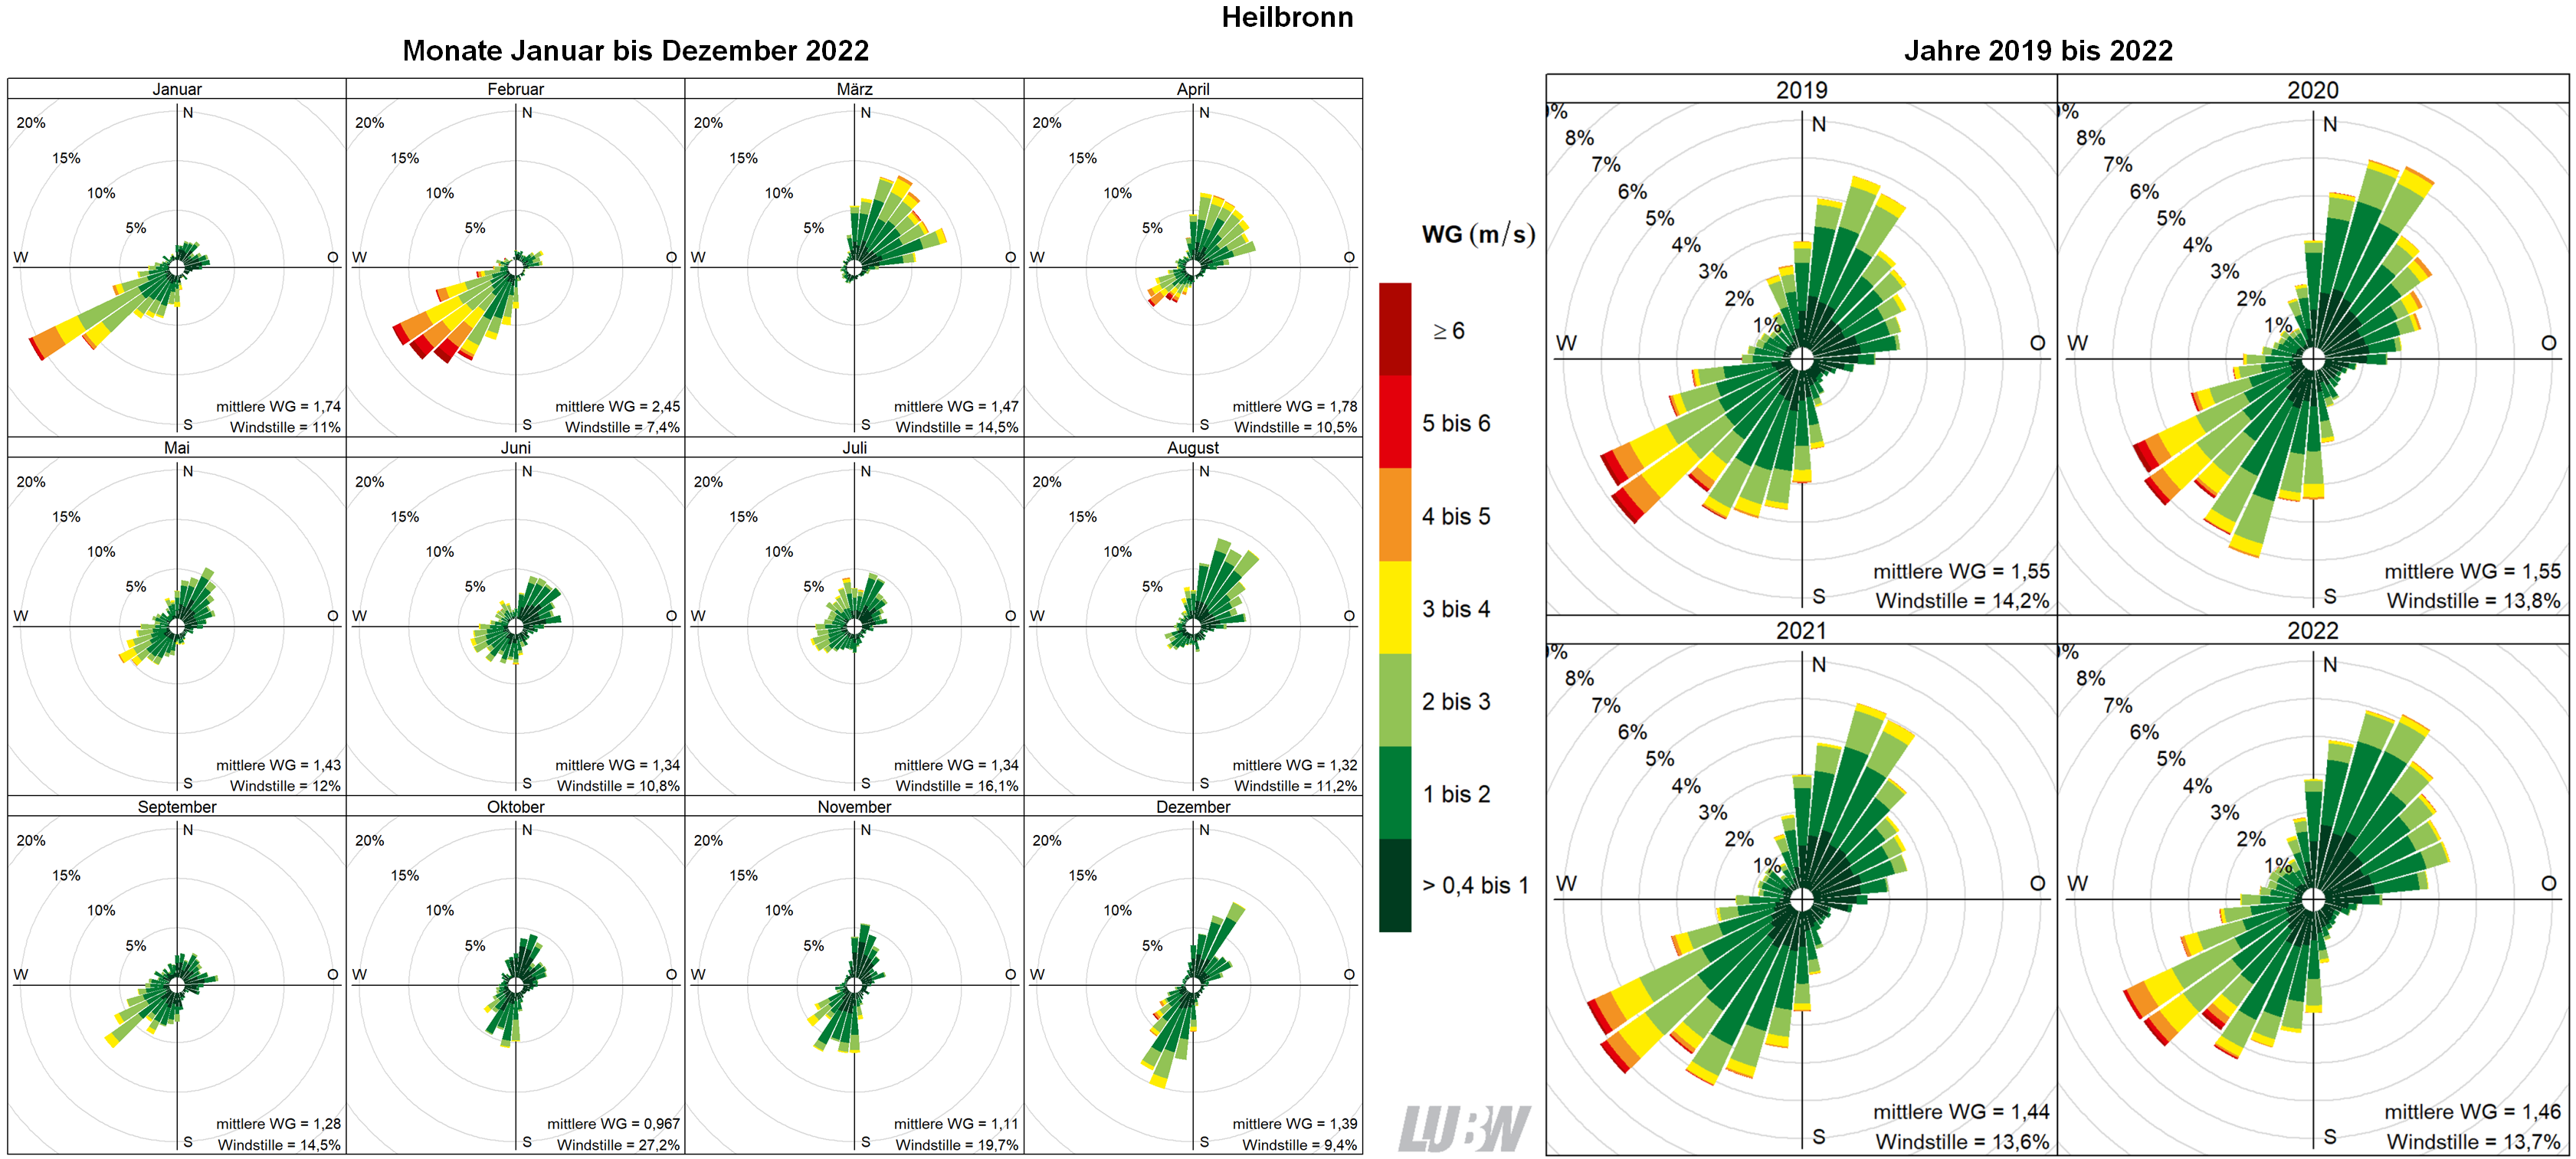  Mitttlere Windverteilung als Windrosen für die Monate Januar bis Dezember 2022 (linke Abbildung) sowie für die Jahre 2019 bis 2022 (rechte Abbildung) für den Standort Heilbronn. Weitere Informationen im umliegenden Text. 